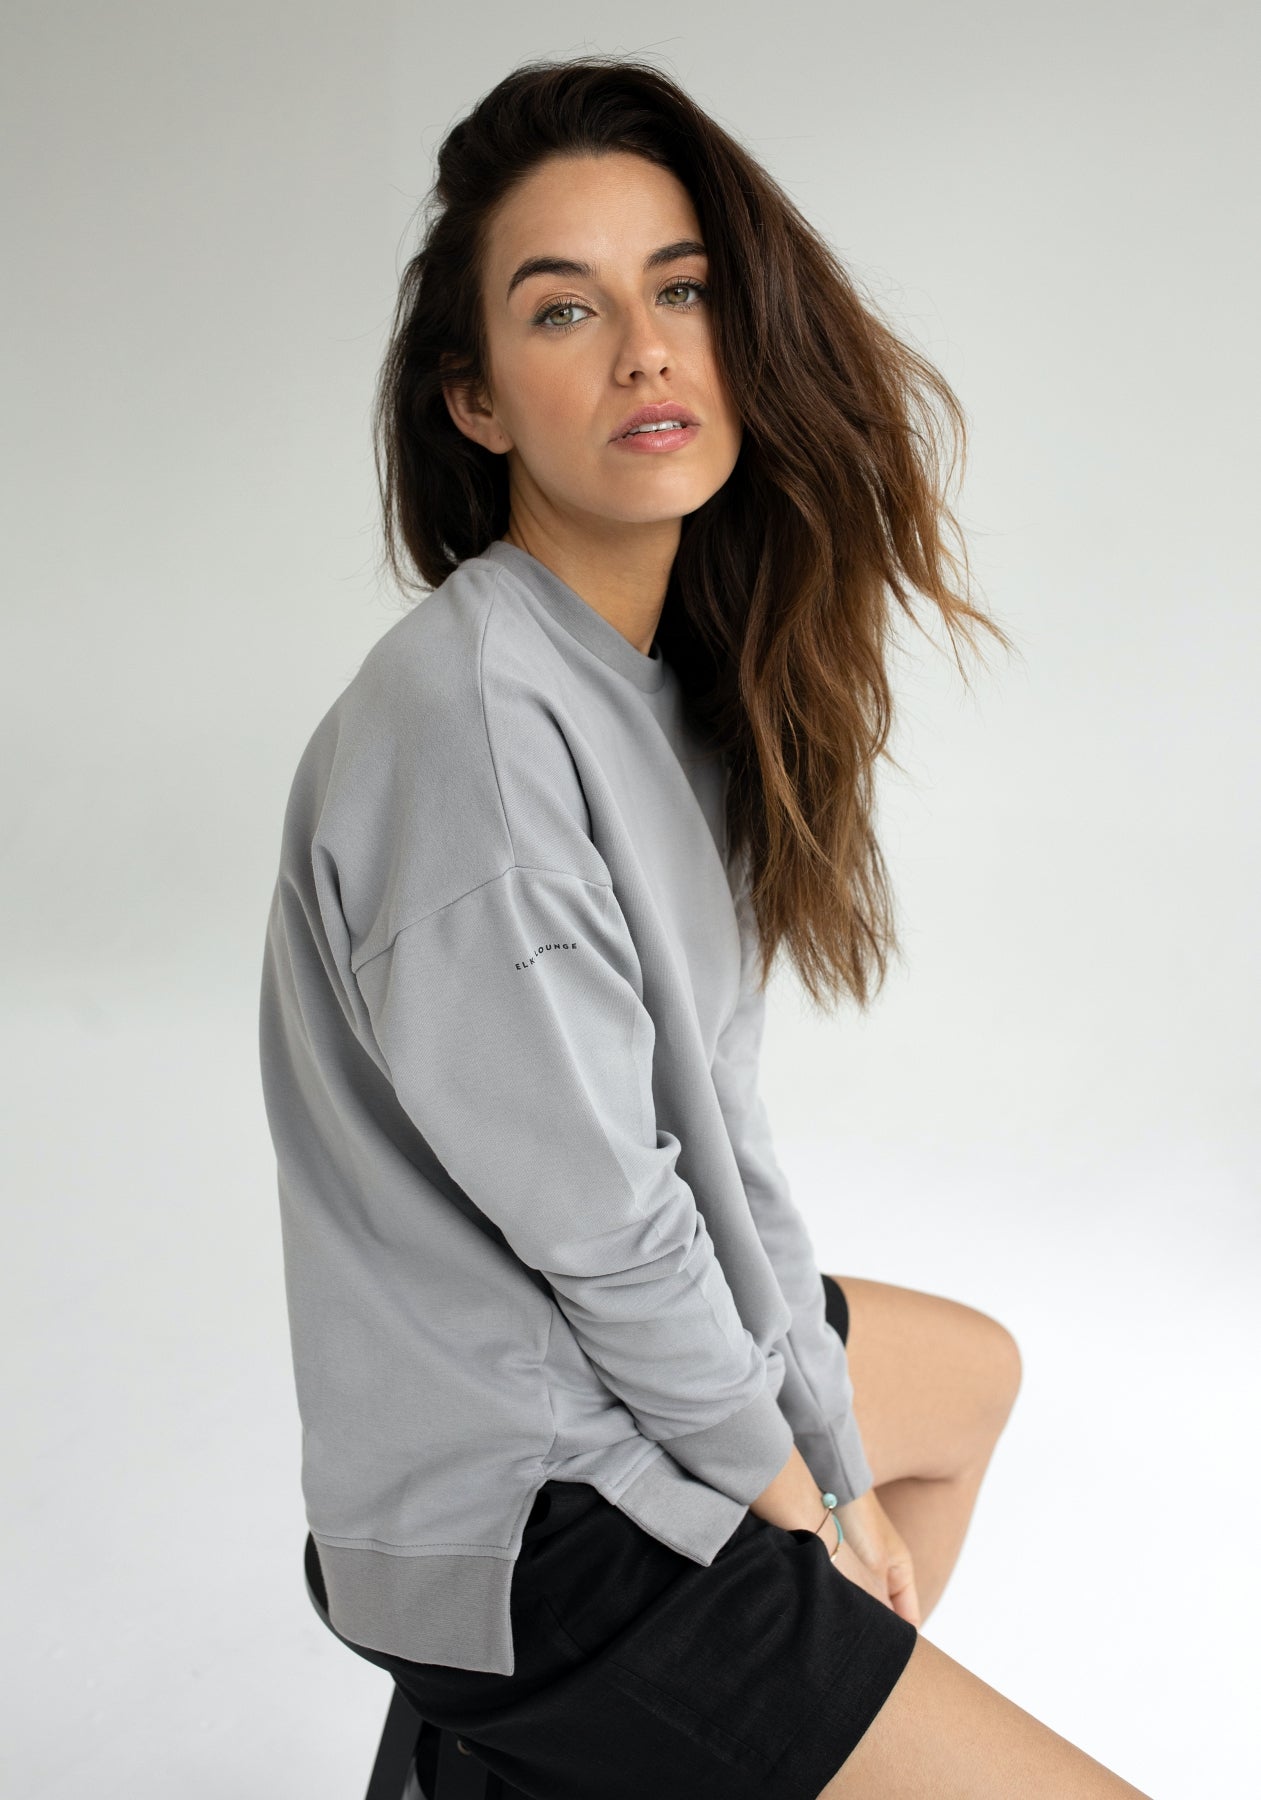 Women bluza bez kaptura z bawełny organicznej Light gray - Oversized